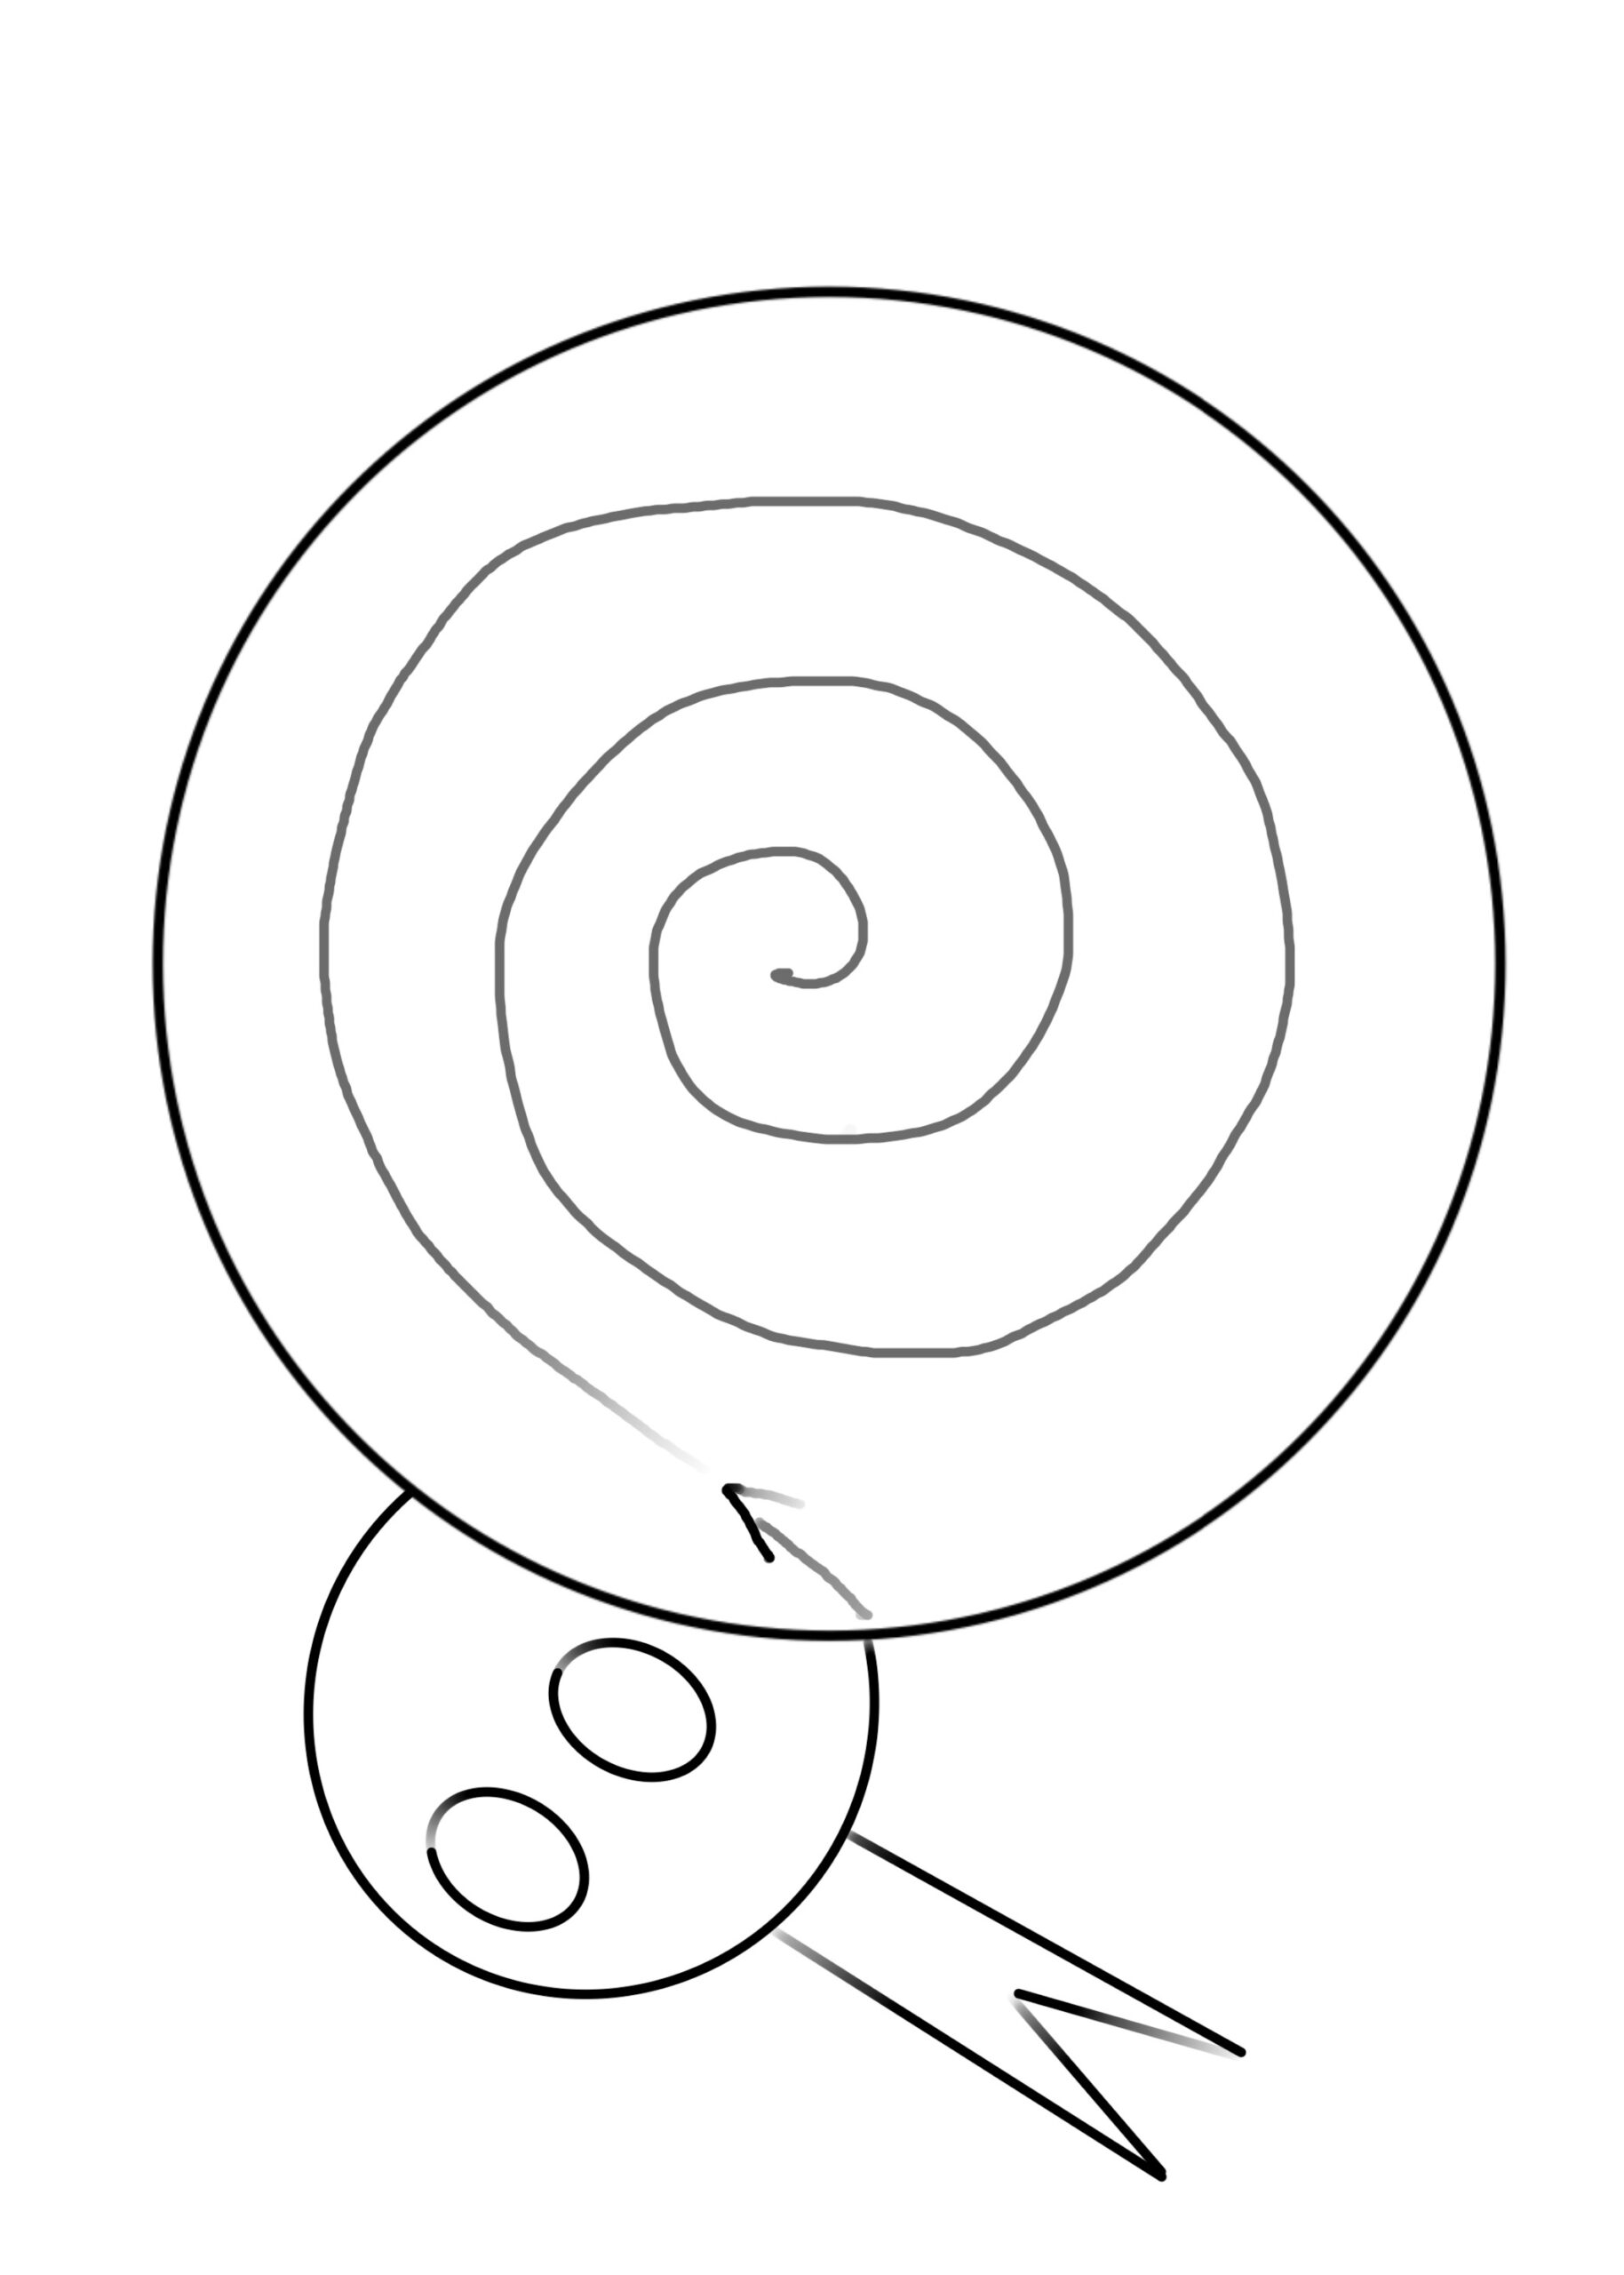 Bild zum Schritt 12 für das Bastel- und DIY-Abenteuer für Kinder: 'Dann wird der Schlangenkörper spiralförmig aufgemalt. Beginnt am Rand des...'